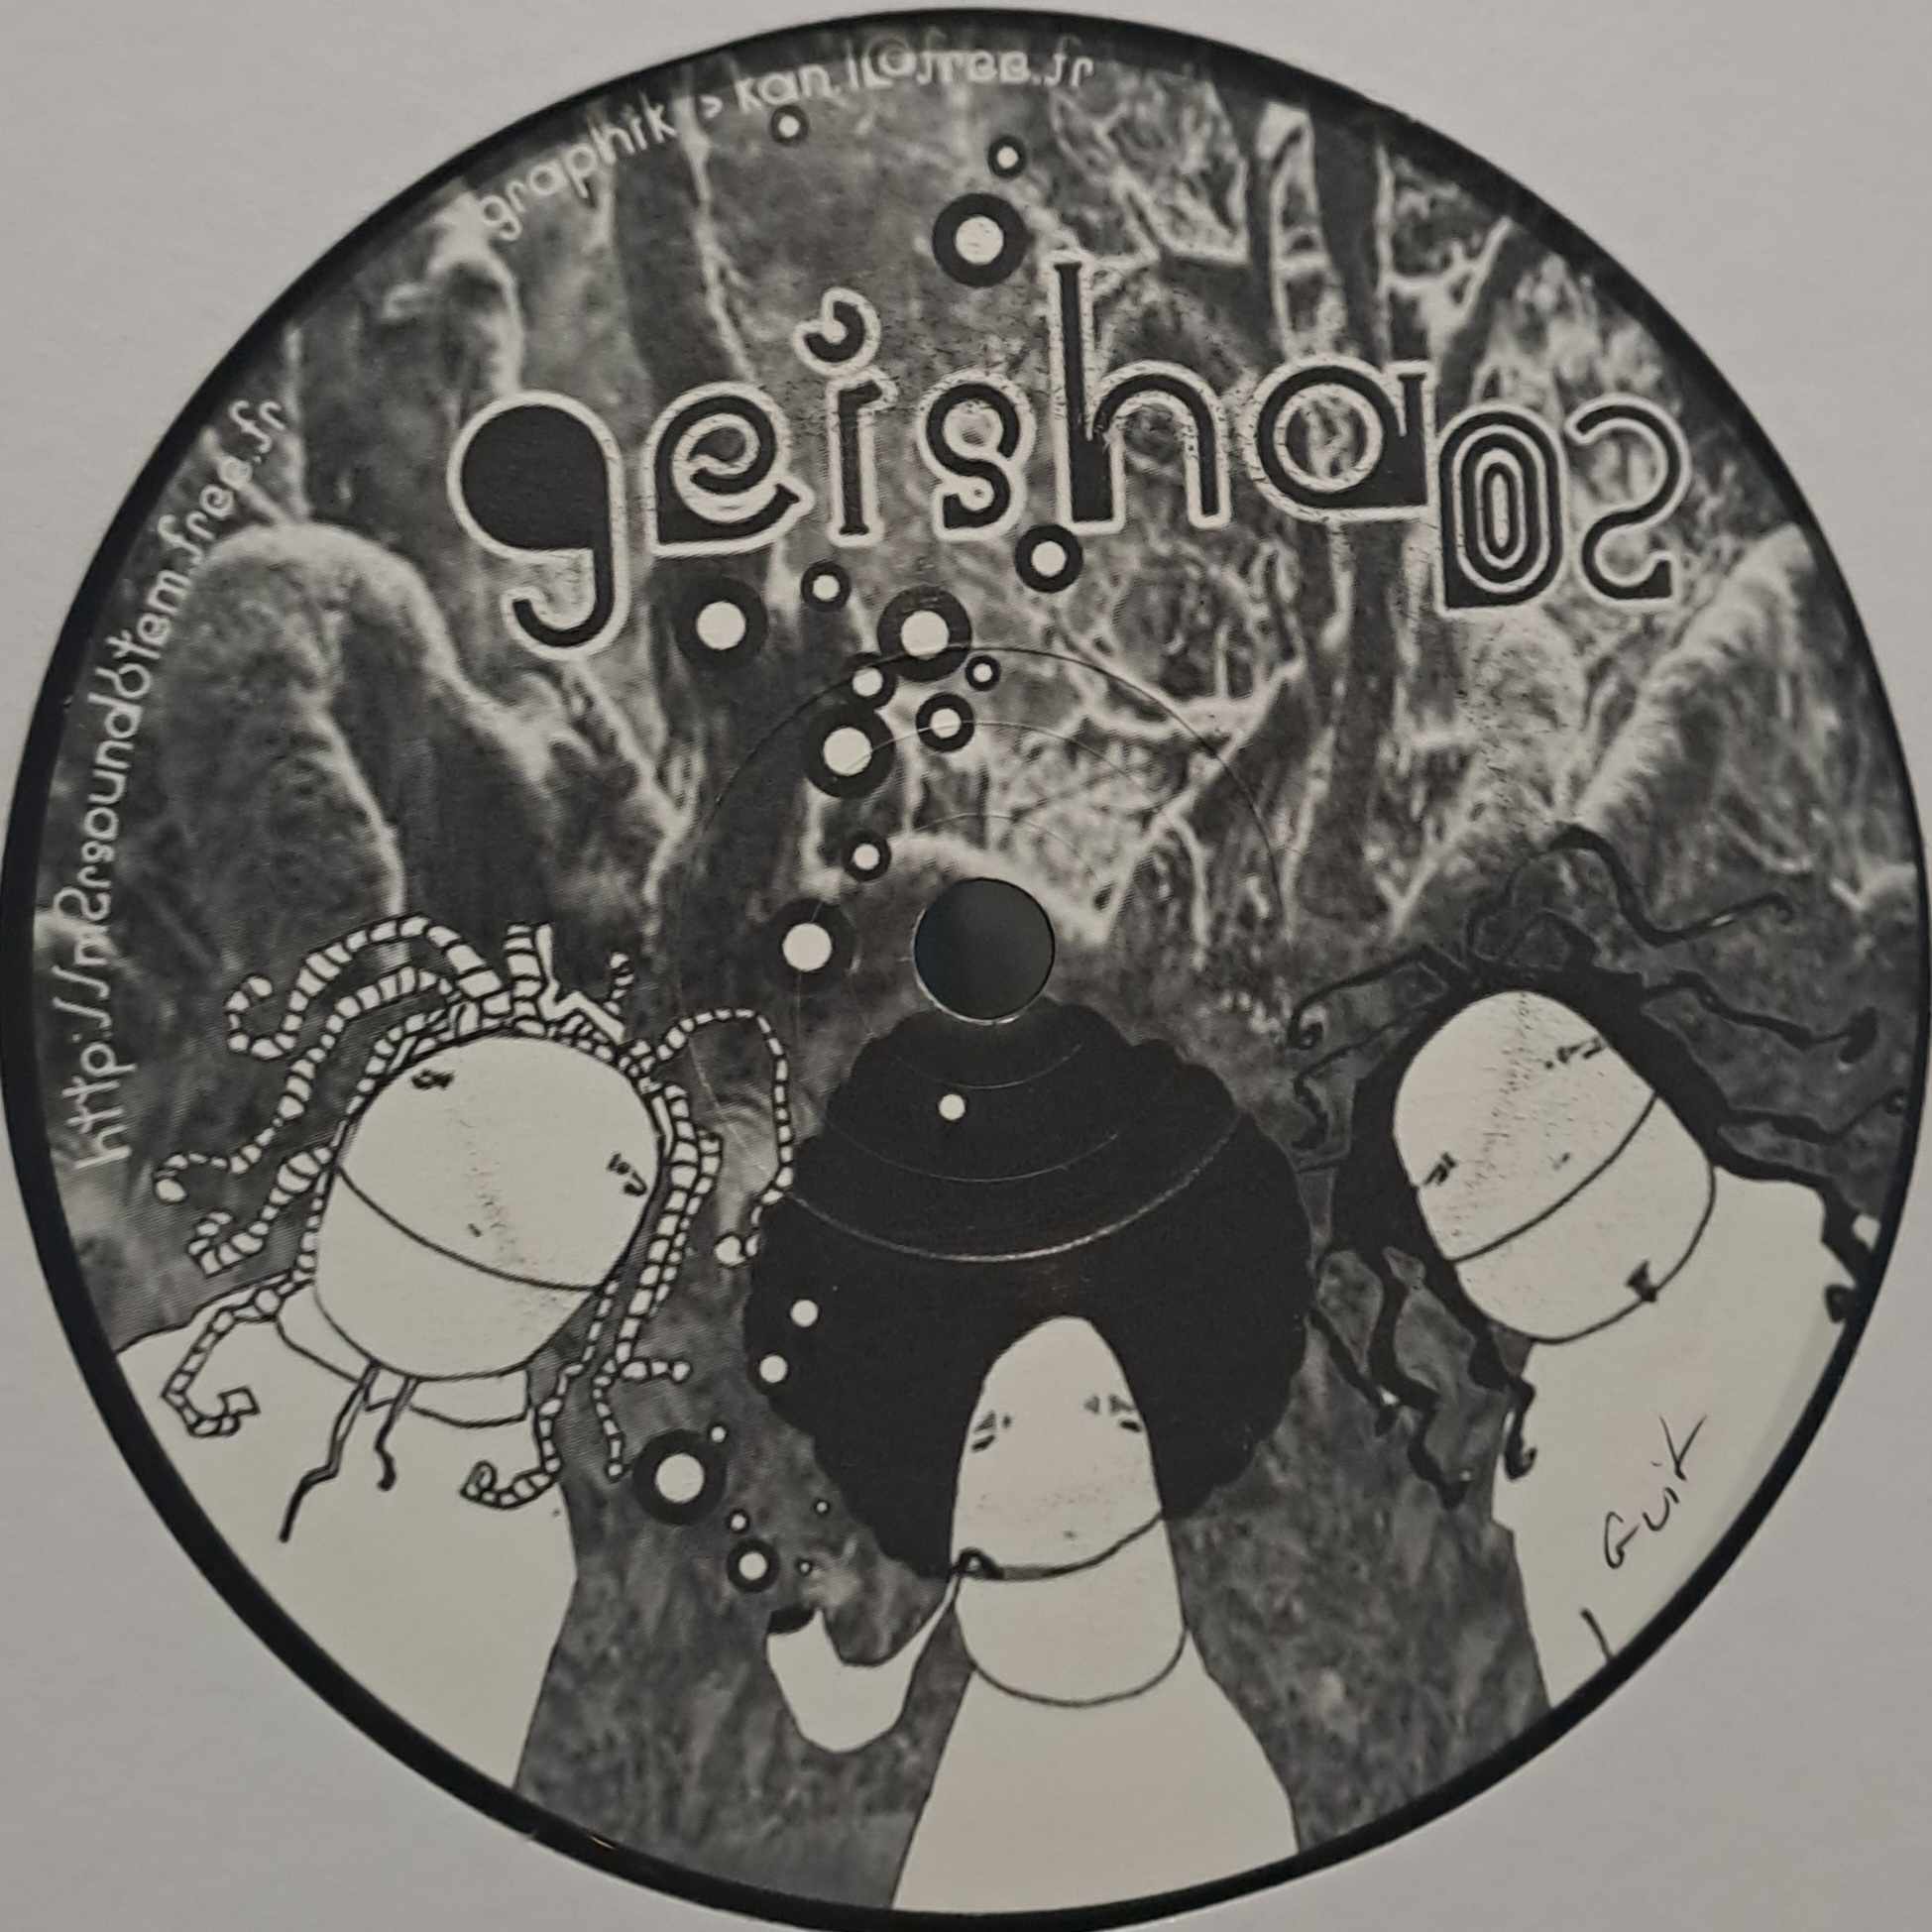 Geisha 02 - vinyle freetekno